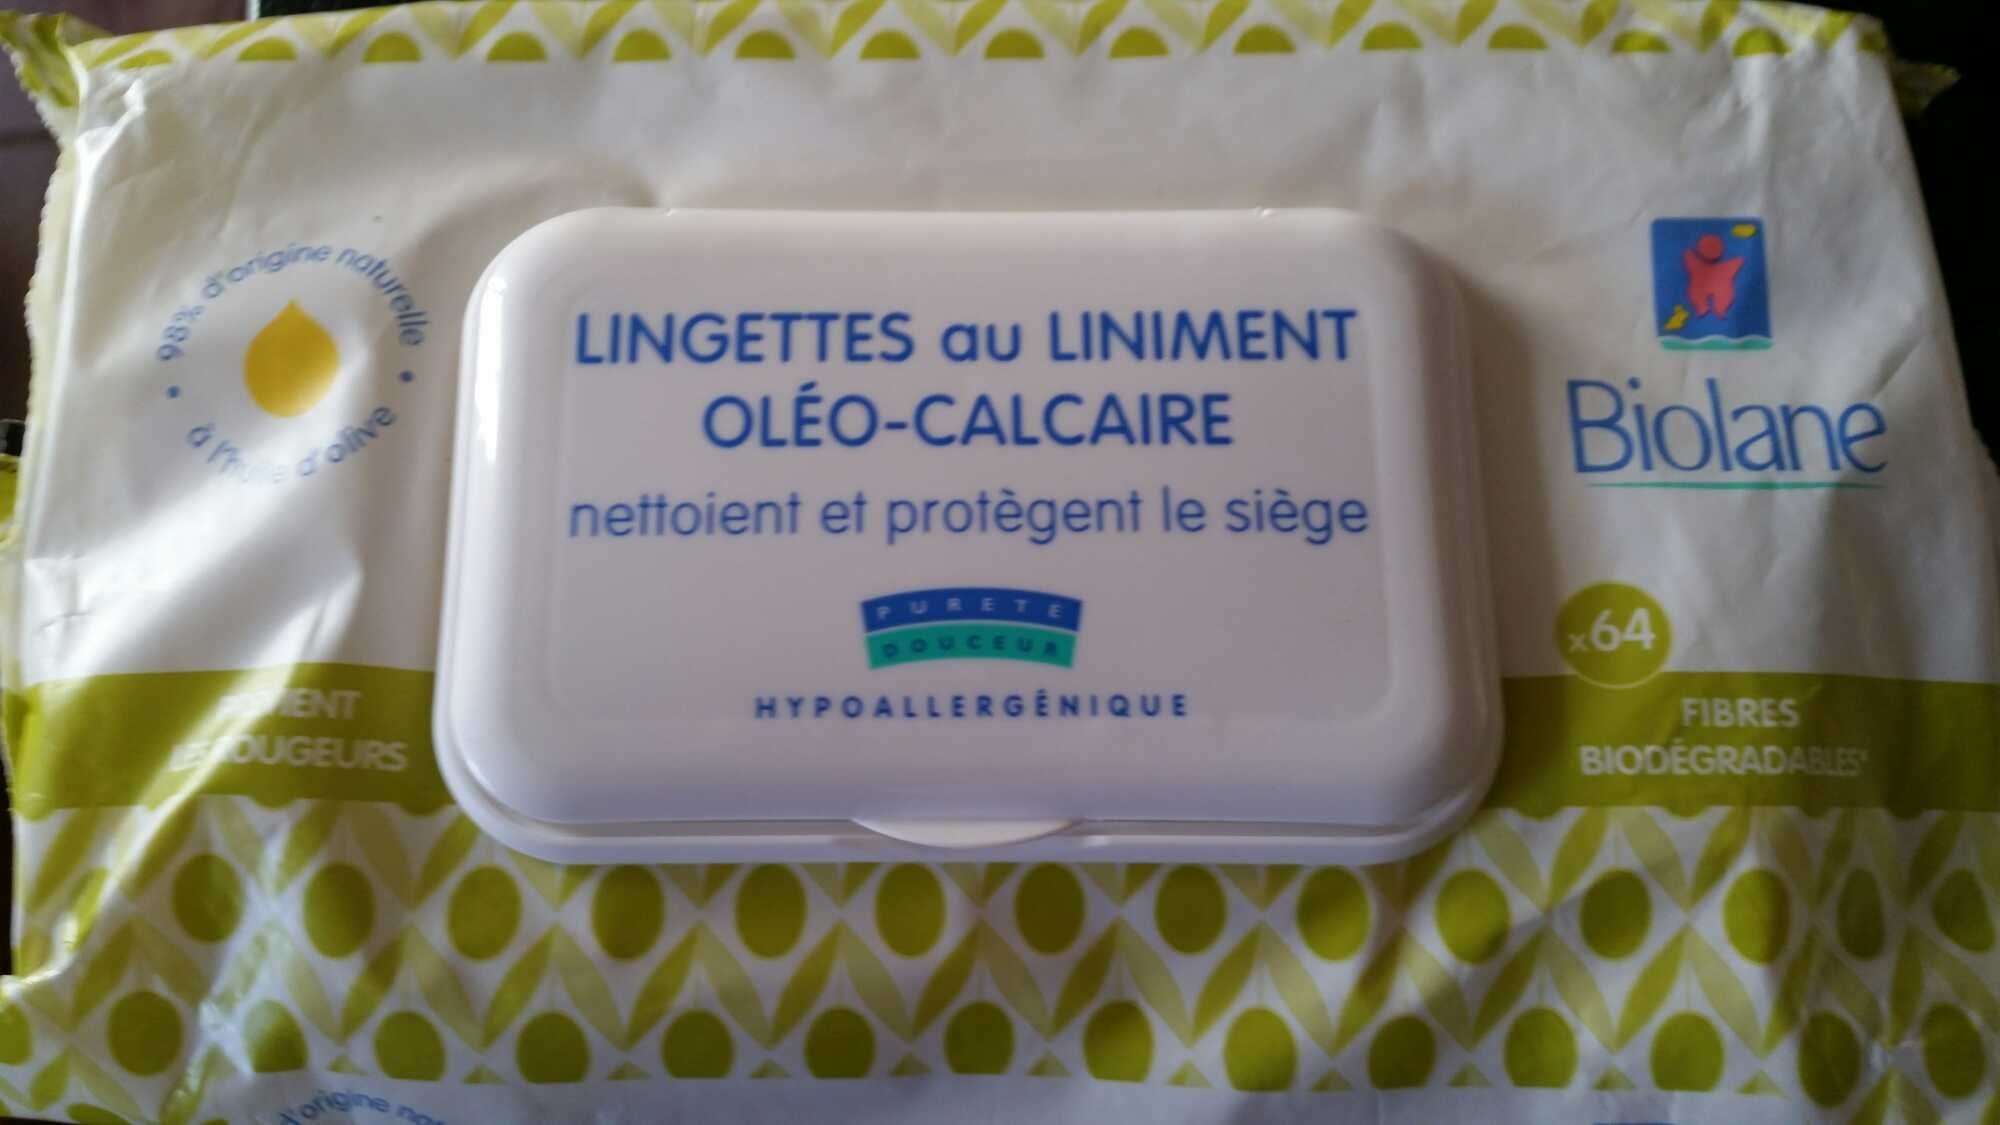 Lingettes au liniment oleo-calcaire - Product - fr